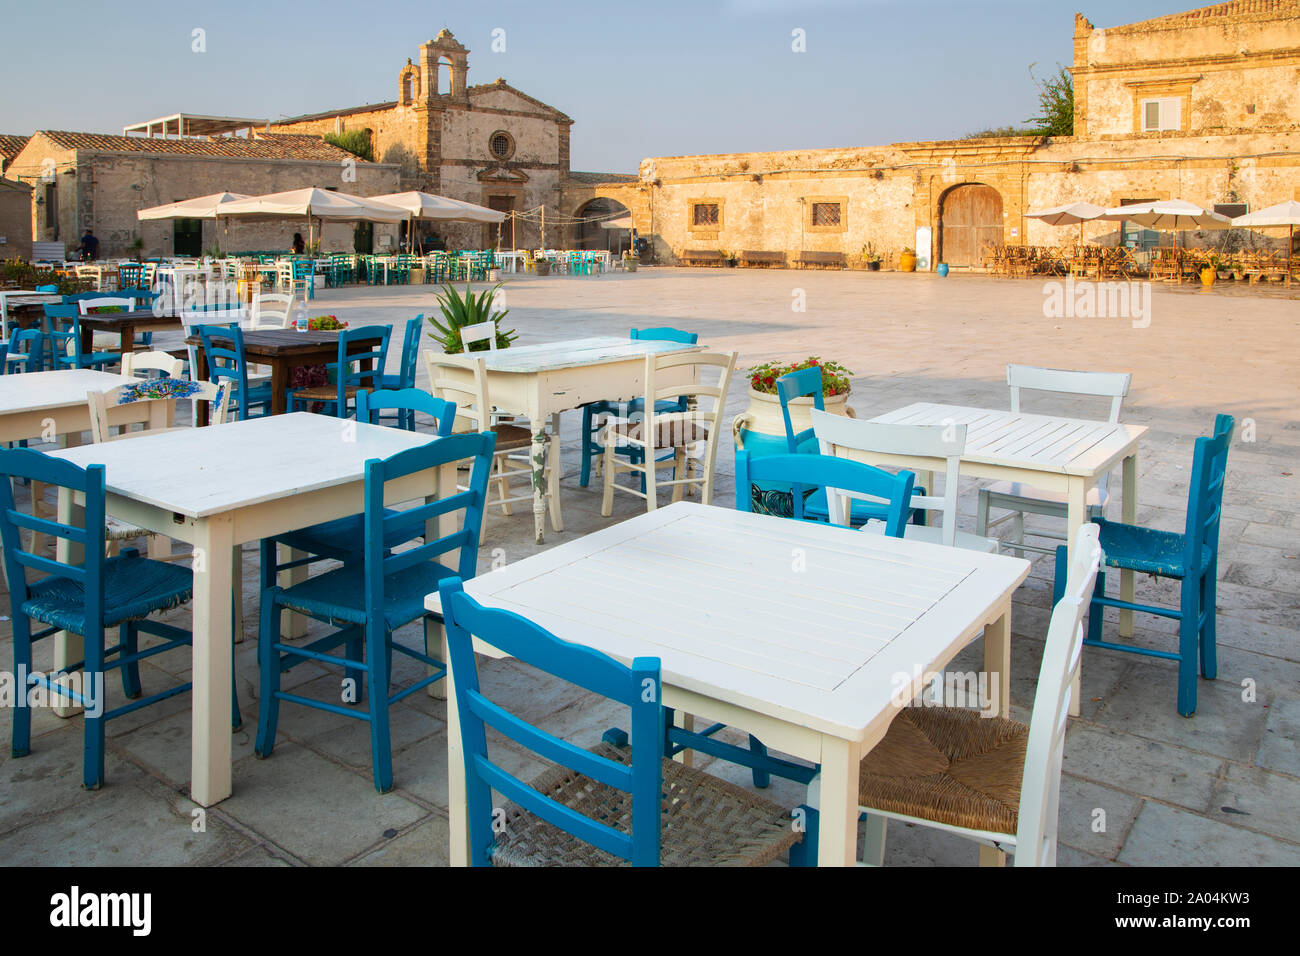 La plaza principal de la antigua aldea de pescadores Marzamemi, Sicilia Foto de stock